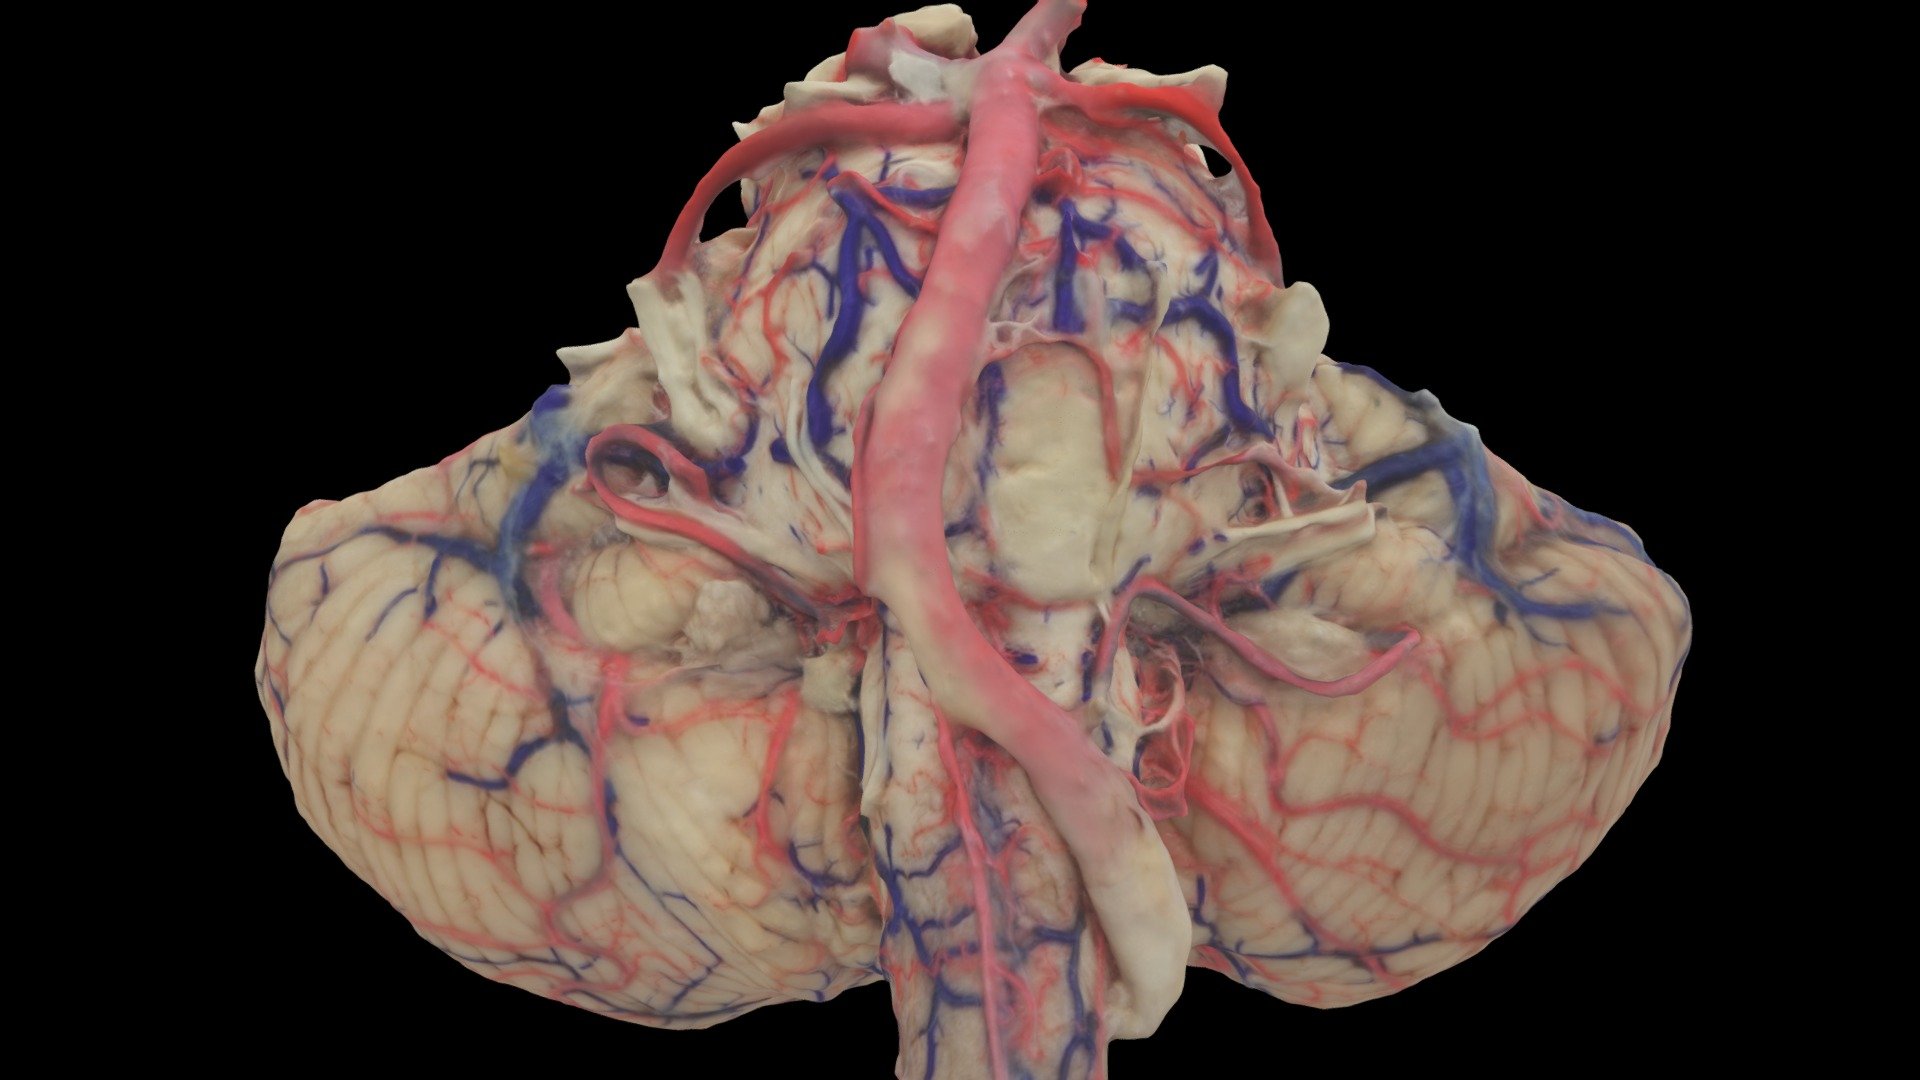 Brainstem with cerebellum